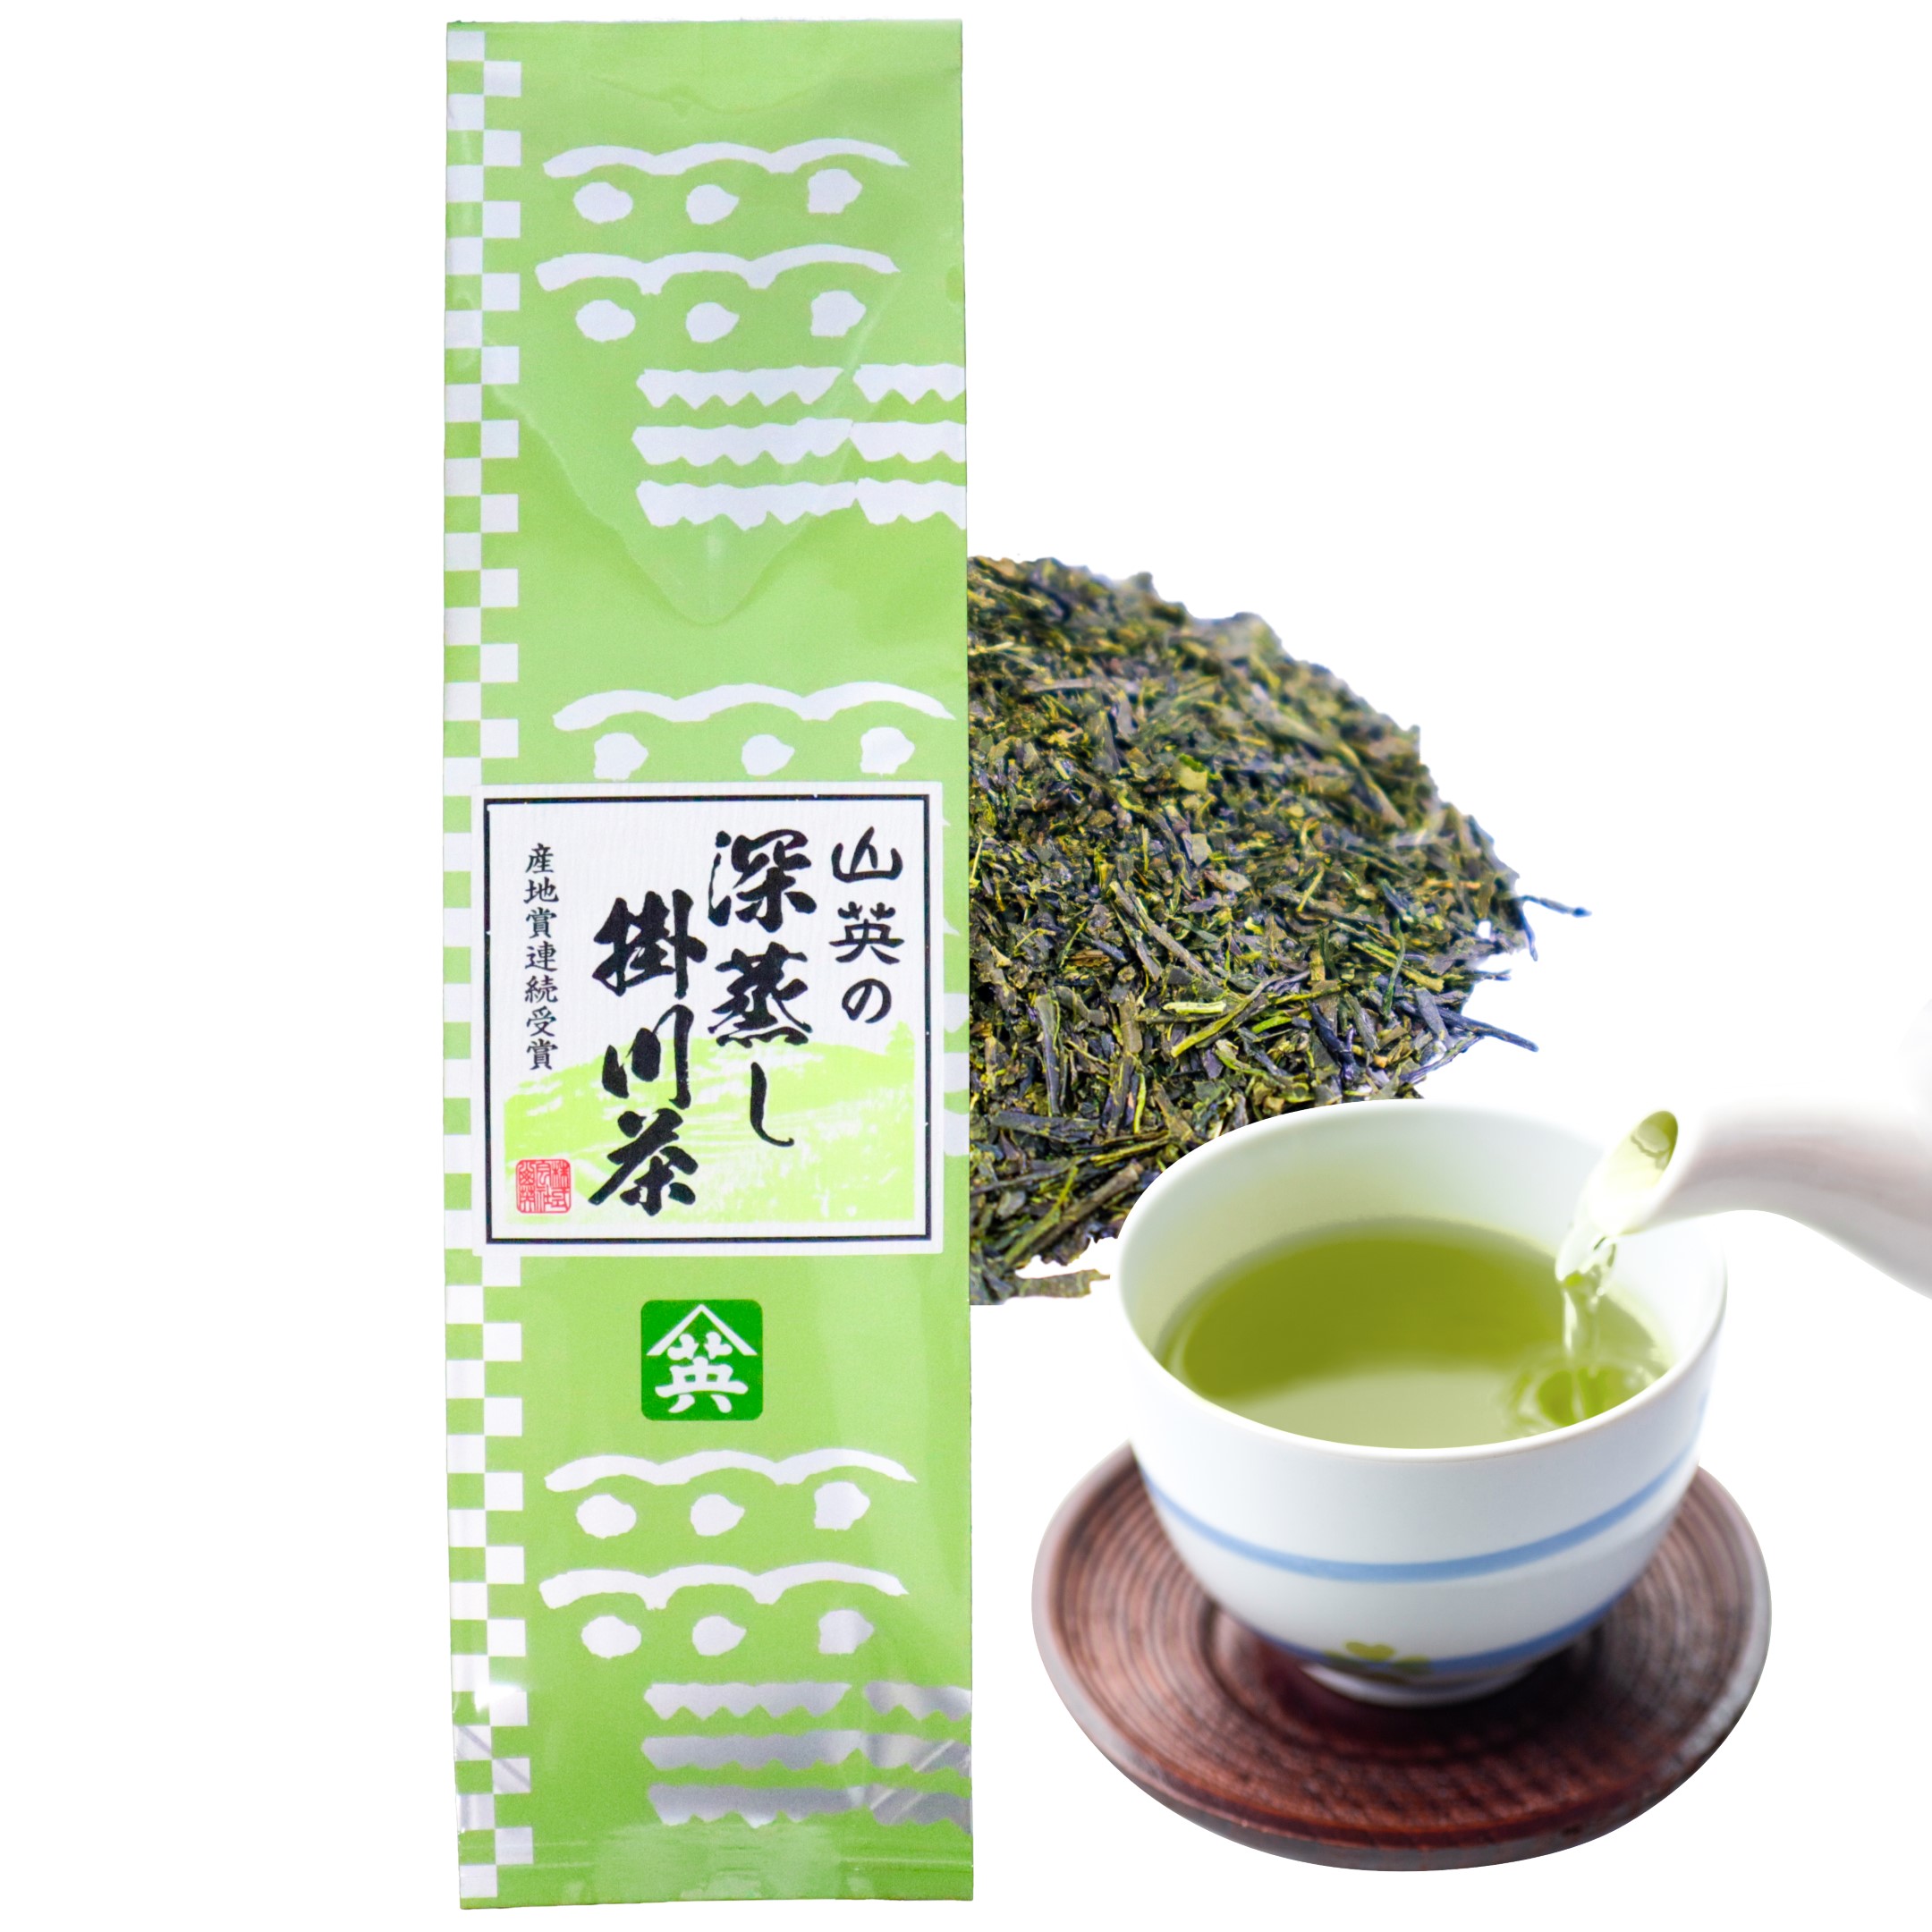 緑茶 茶葉 300g 静岡 掛川 深蒸し茶 大容量 お茶 茶 水出し緑茶 お茶葉 